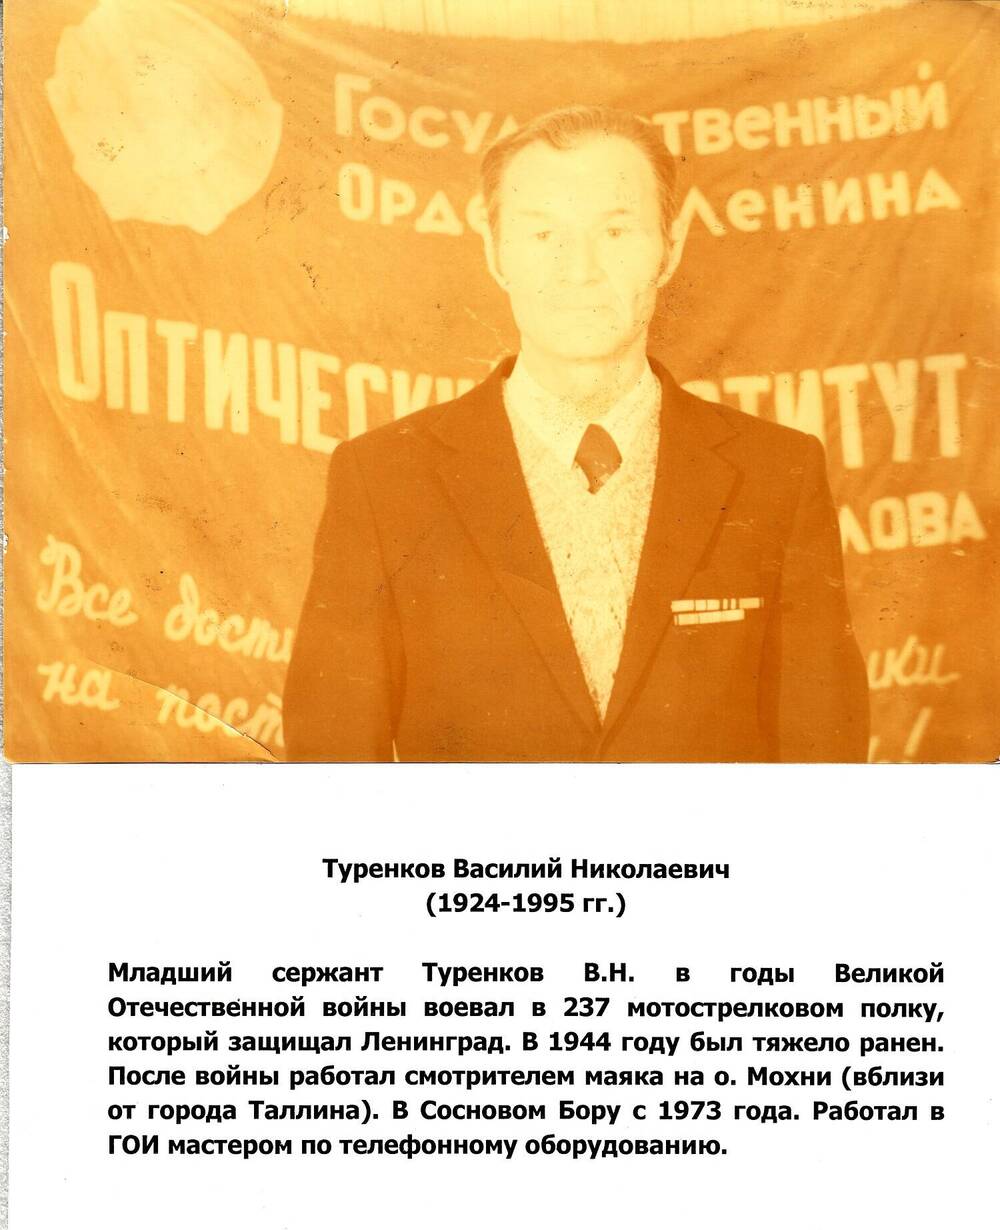 Фото Туренкова Василия Николаевича с орденскими планками